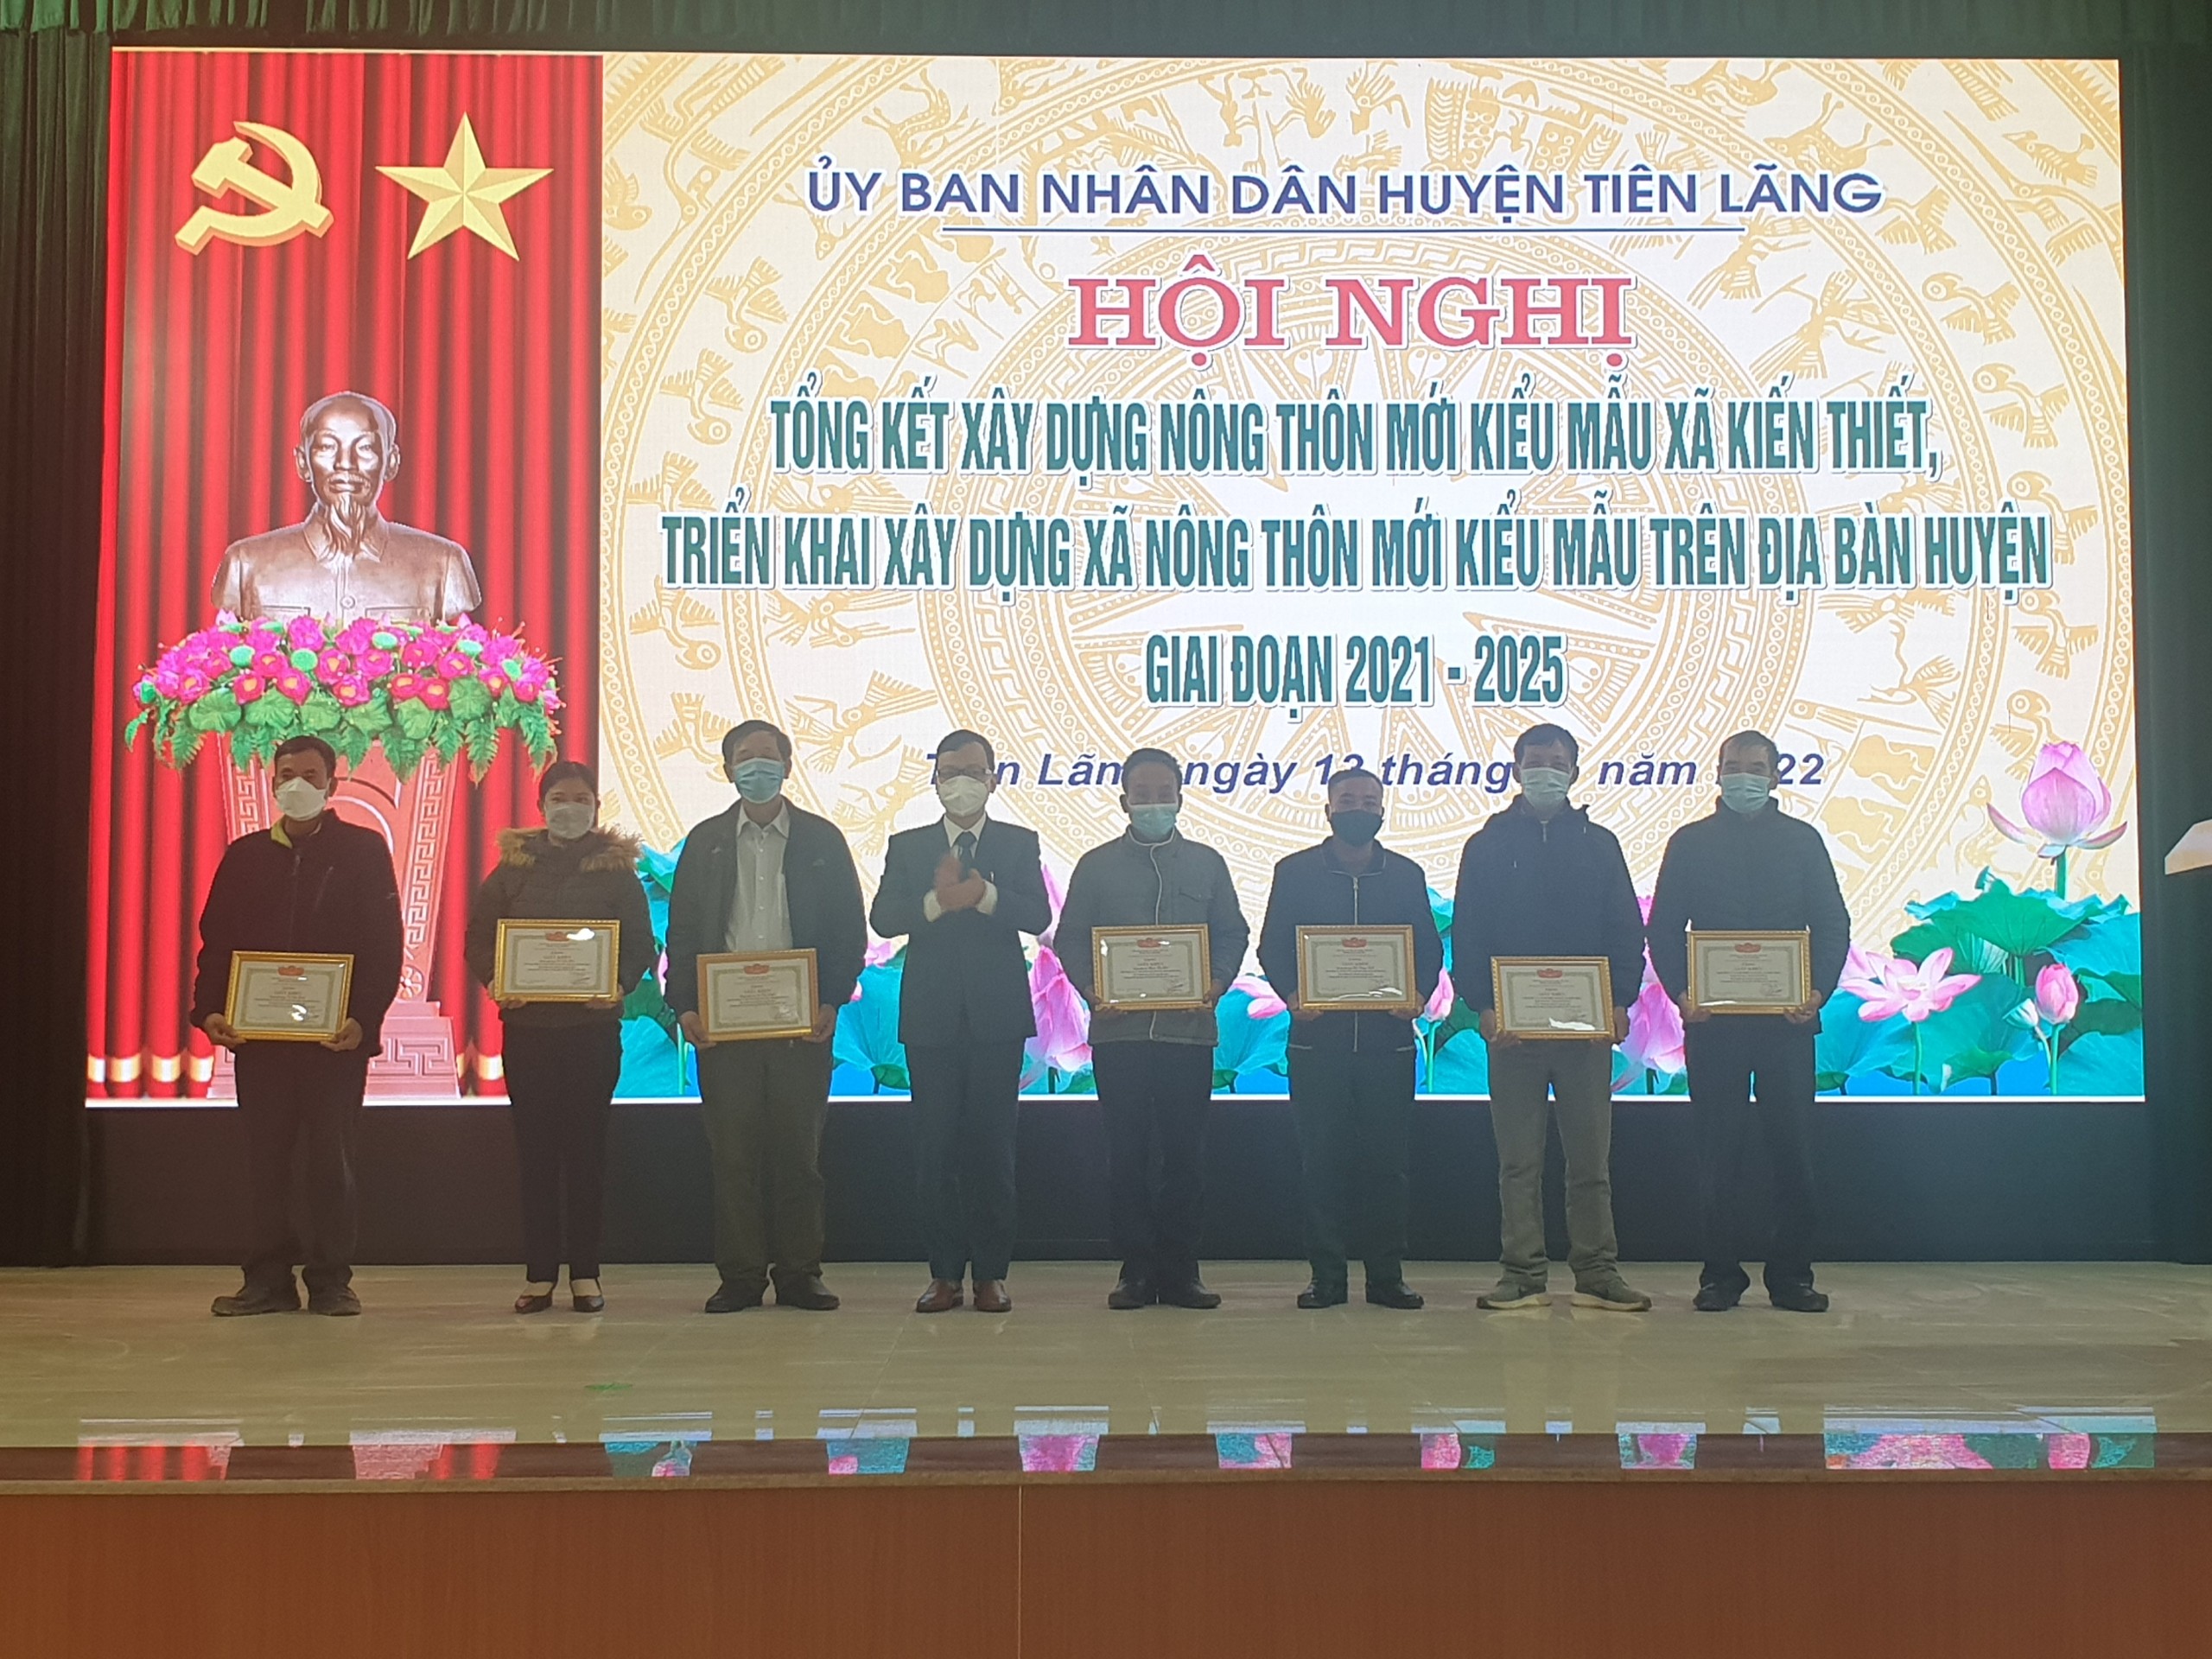 Đồng chí Bùi Thành Cương- Chủ tịch UBND huyện Tiên Lãng trao giấy khen của UBND huyện Tiên Lãng tặng các tập thể, cá nhân có thành tích trong xây dựng NTM tại xã Kiến Thiết  